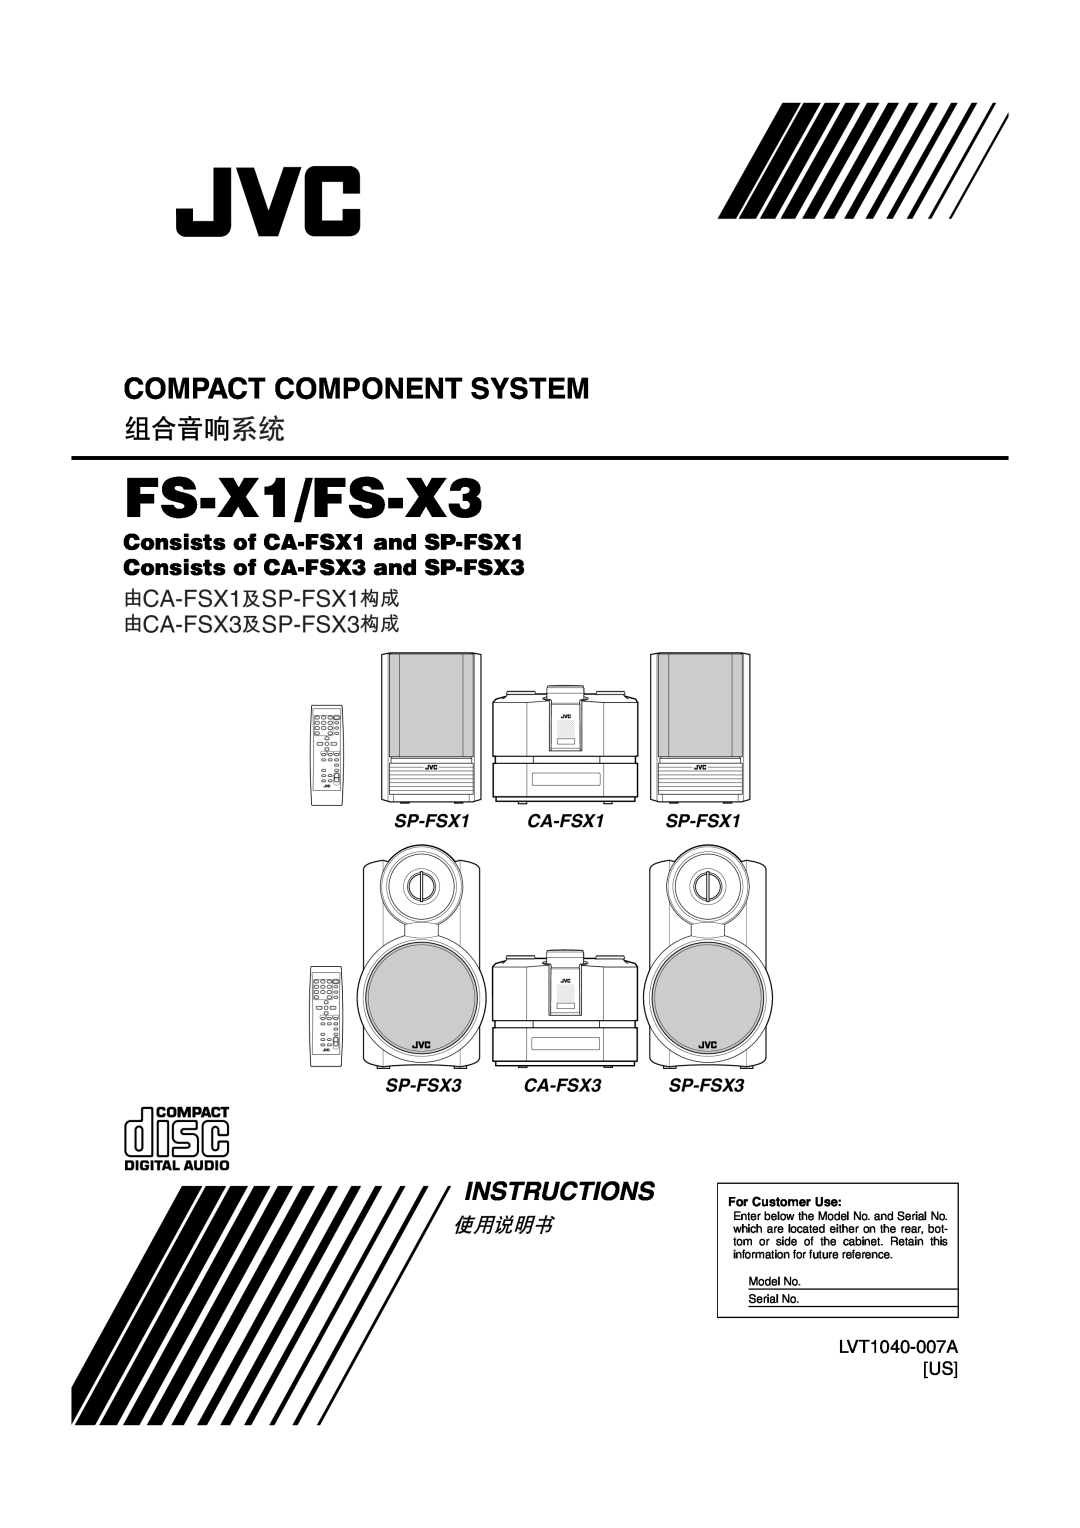 JVC manual FS-X1/FS-X3, Compact Component System, Instructions, CA-FSX1SP-FSX1 CA-FSX3SP-FSX3, SP-FSX1 SP-FSX3 